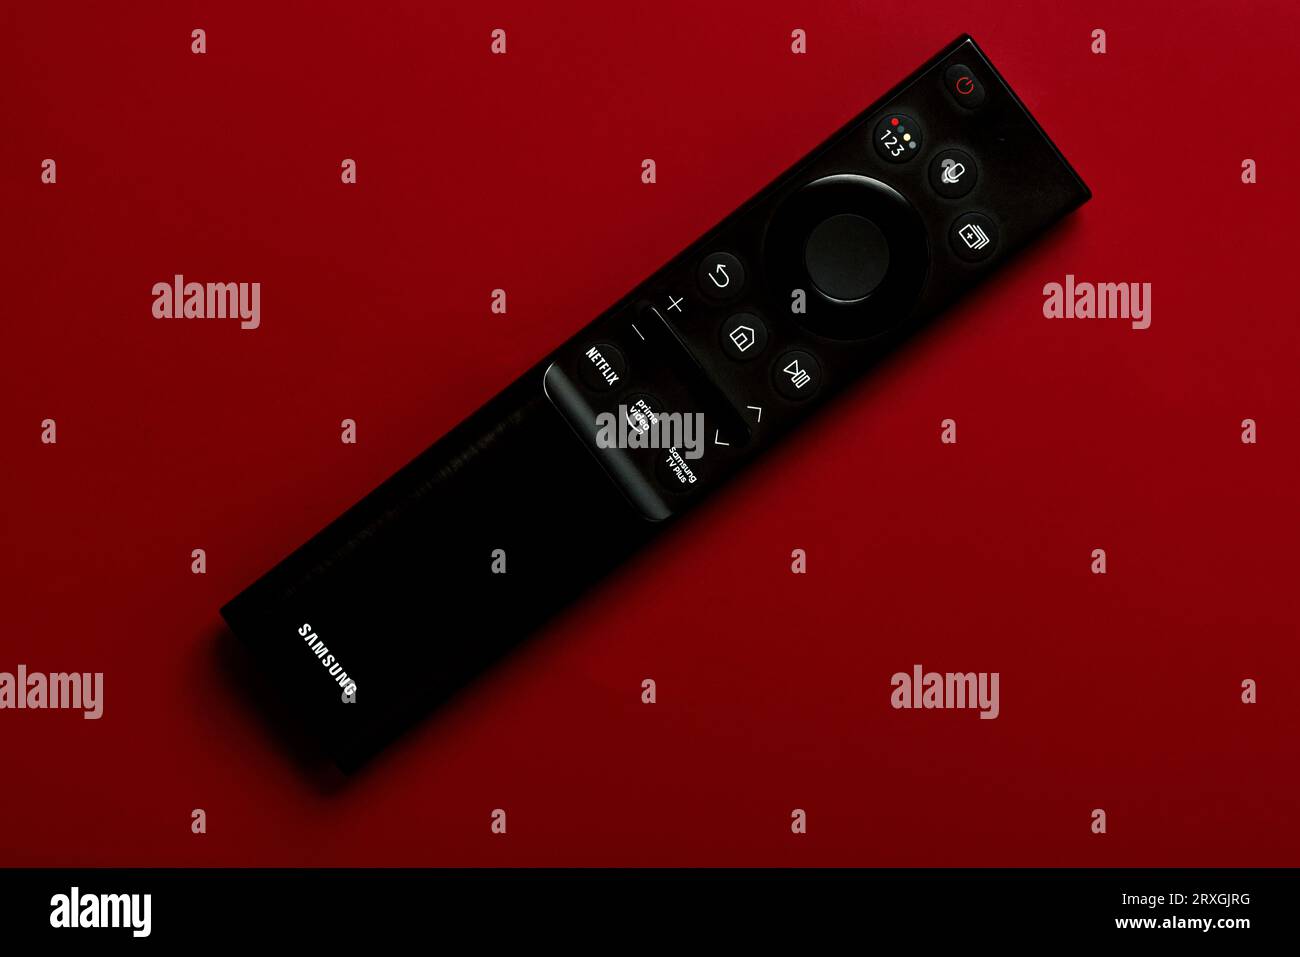 Primo piano del telecomando Samsung Smart TV con pulsanti per accedere ad Amazon prime e Netflix su sfondo rosso Foto Stock